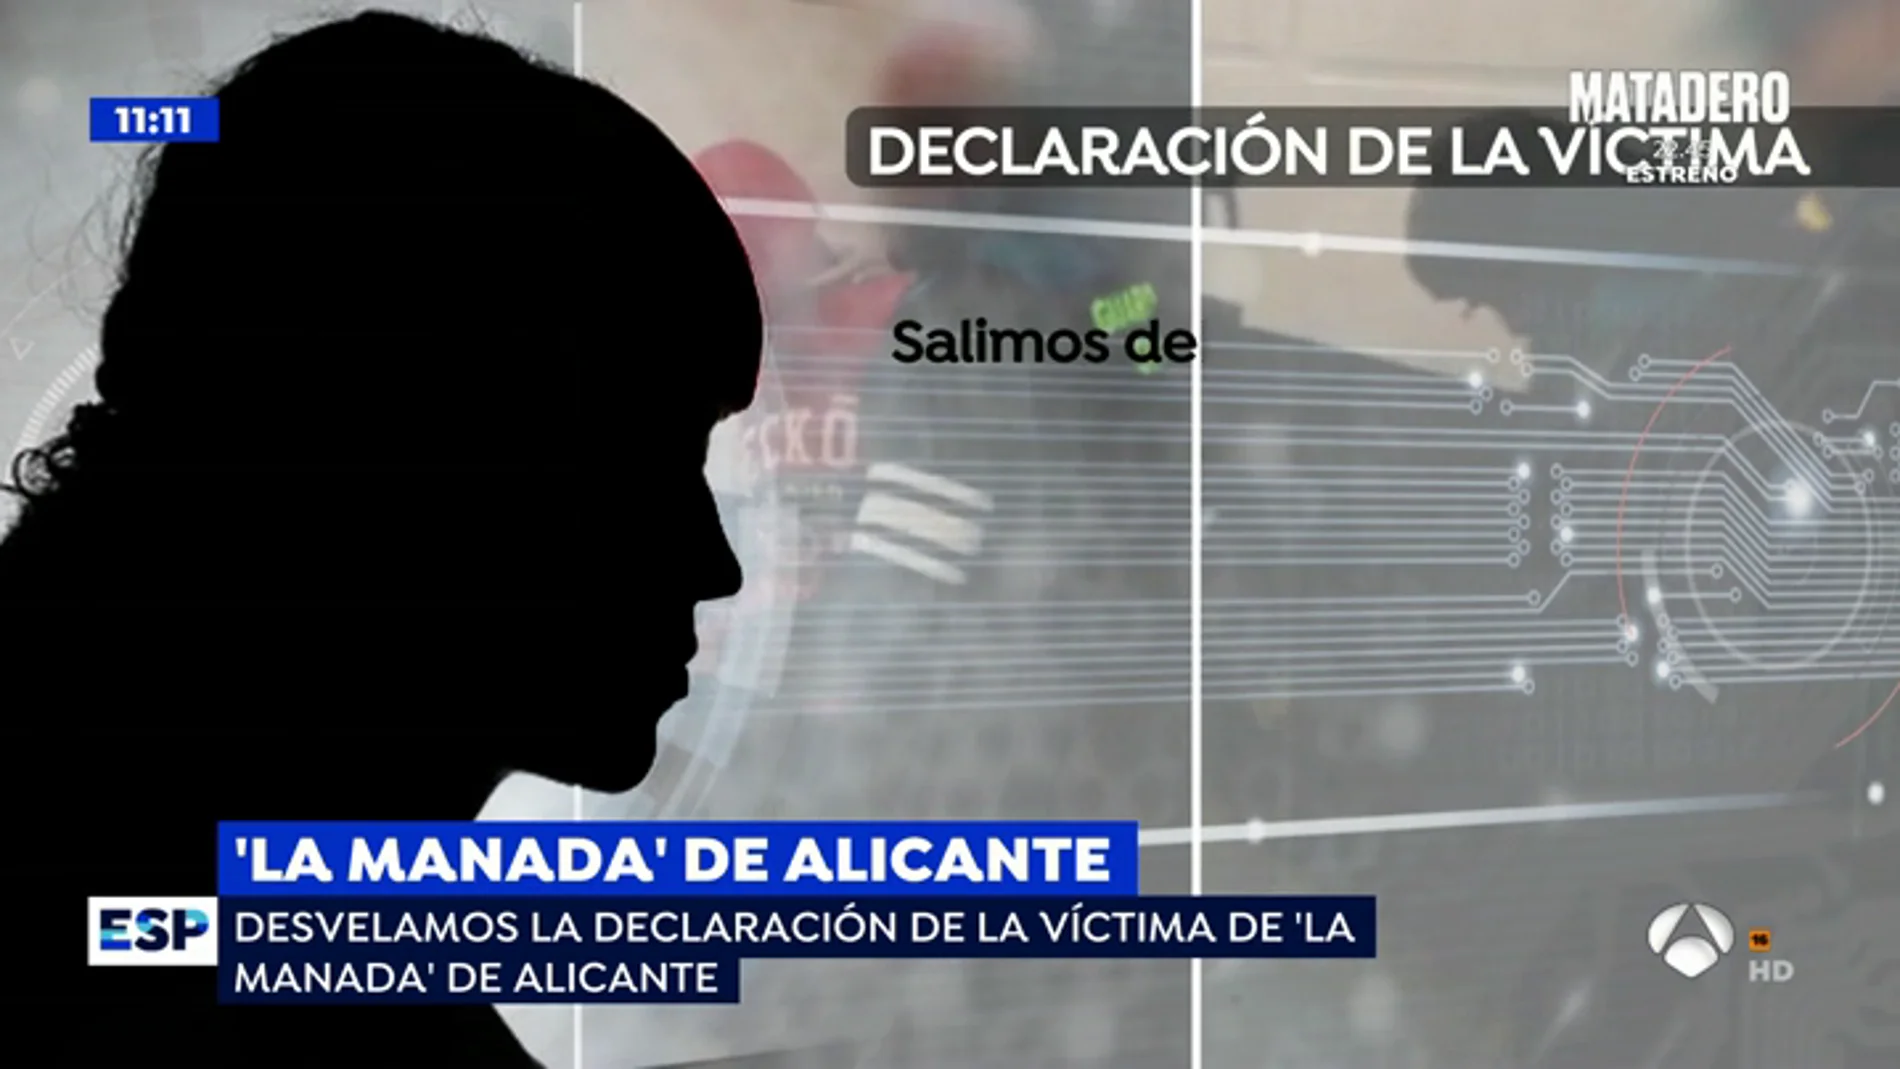 La estremecedora declaración de la víctima de 'La Manada de Alicante': "Me sujetaron la cabeza contra el suelo y me rompieron la ropa"